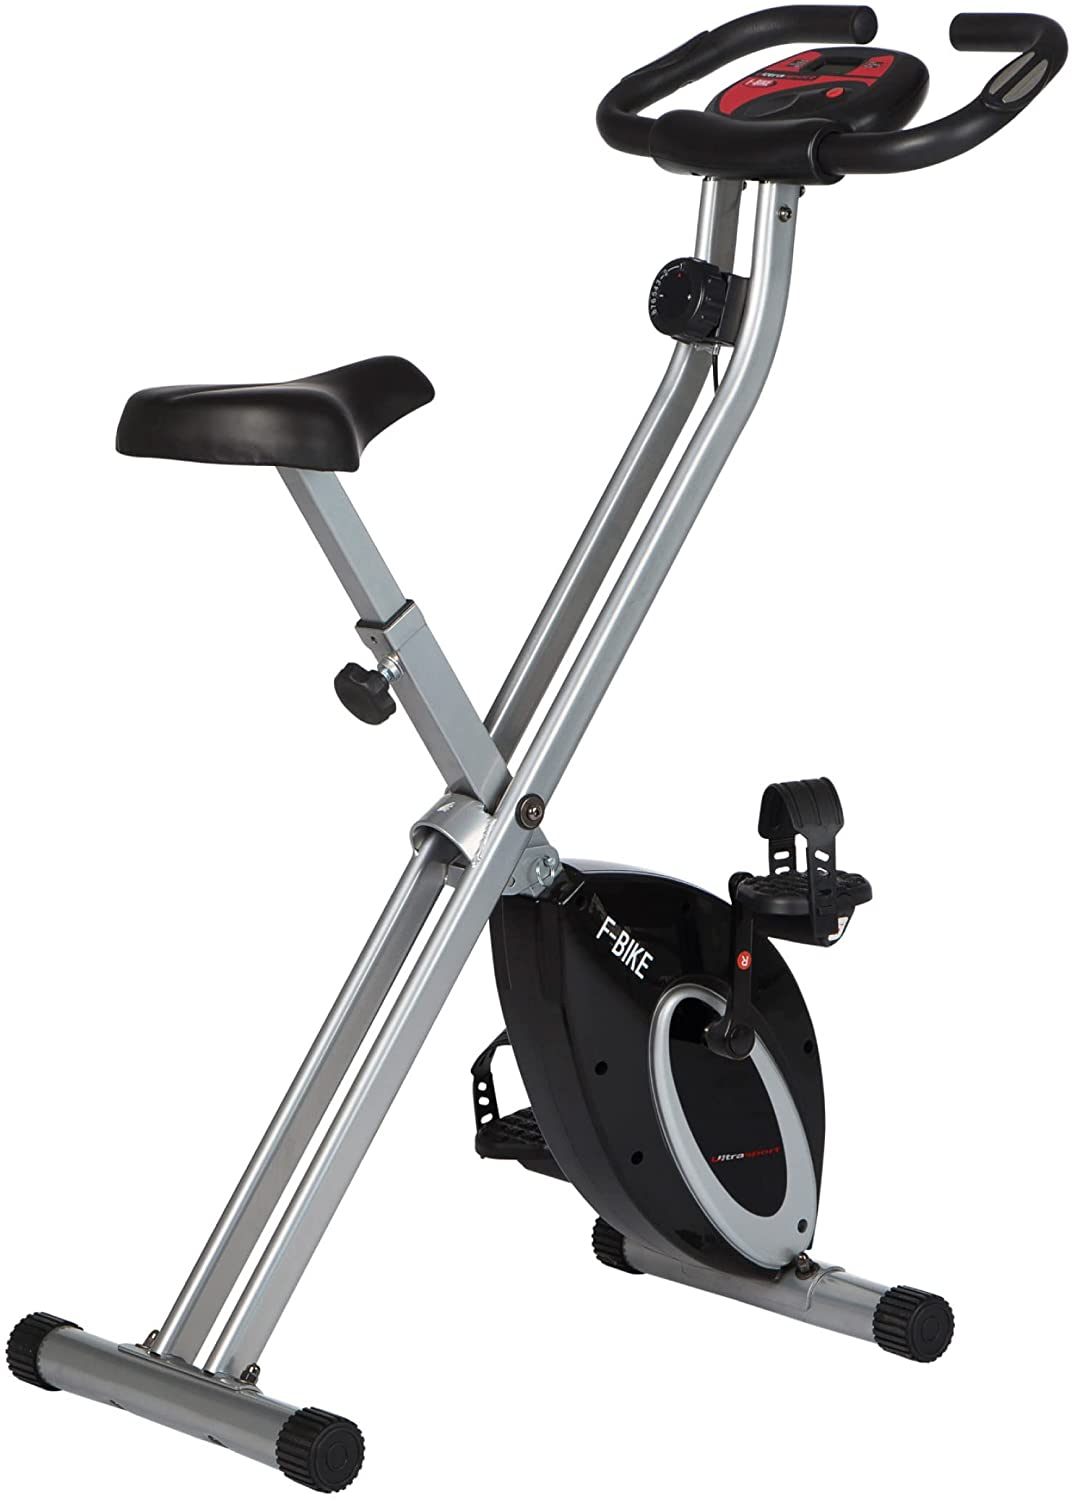 Bild zu Ultrasport F-Bike Basics klappbarer Hometrainer mit Display für 77,86€ (Vergleich: 119,99€)